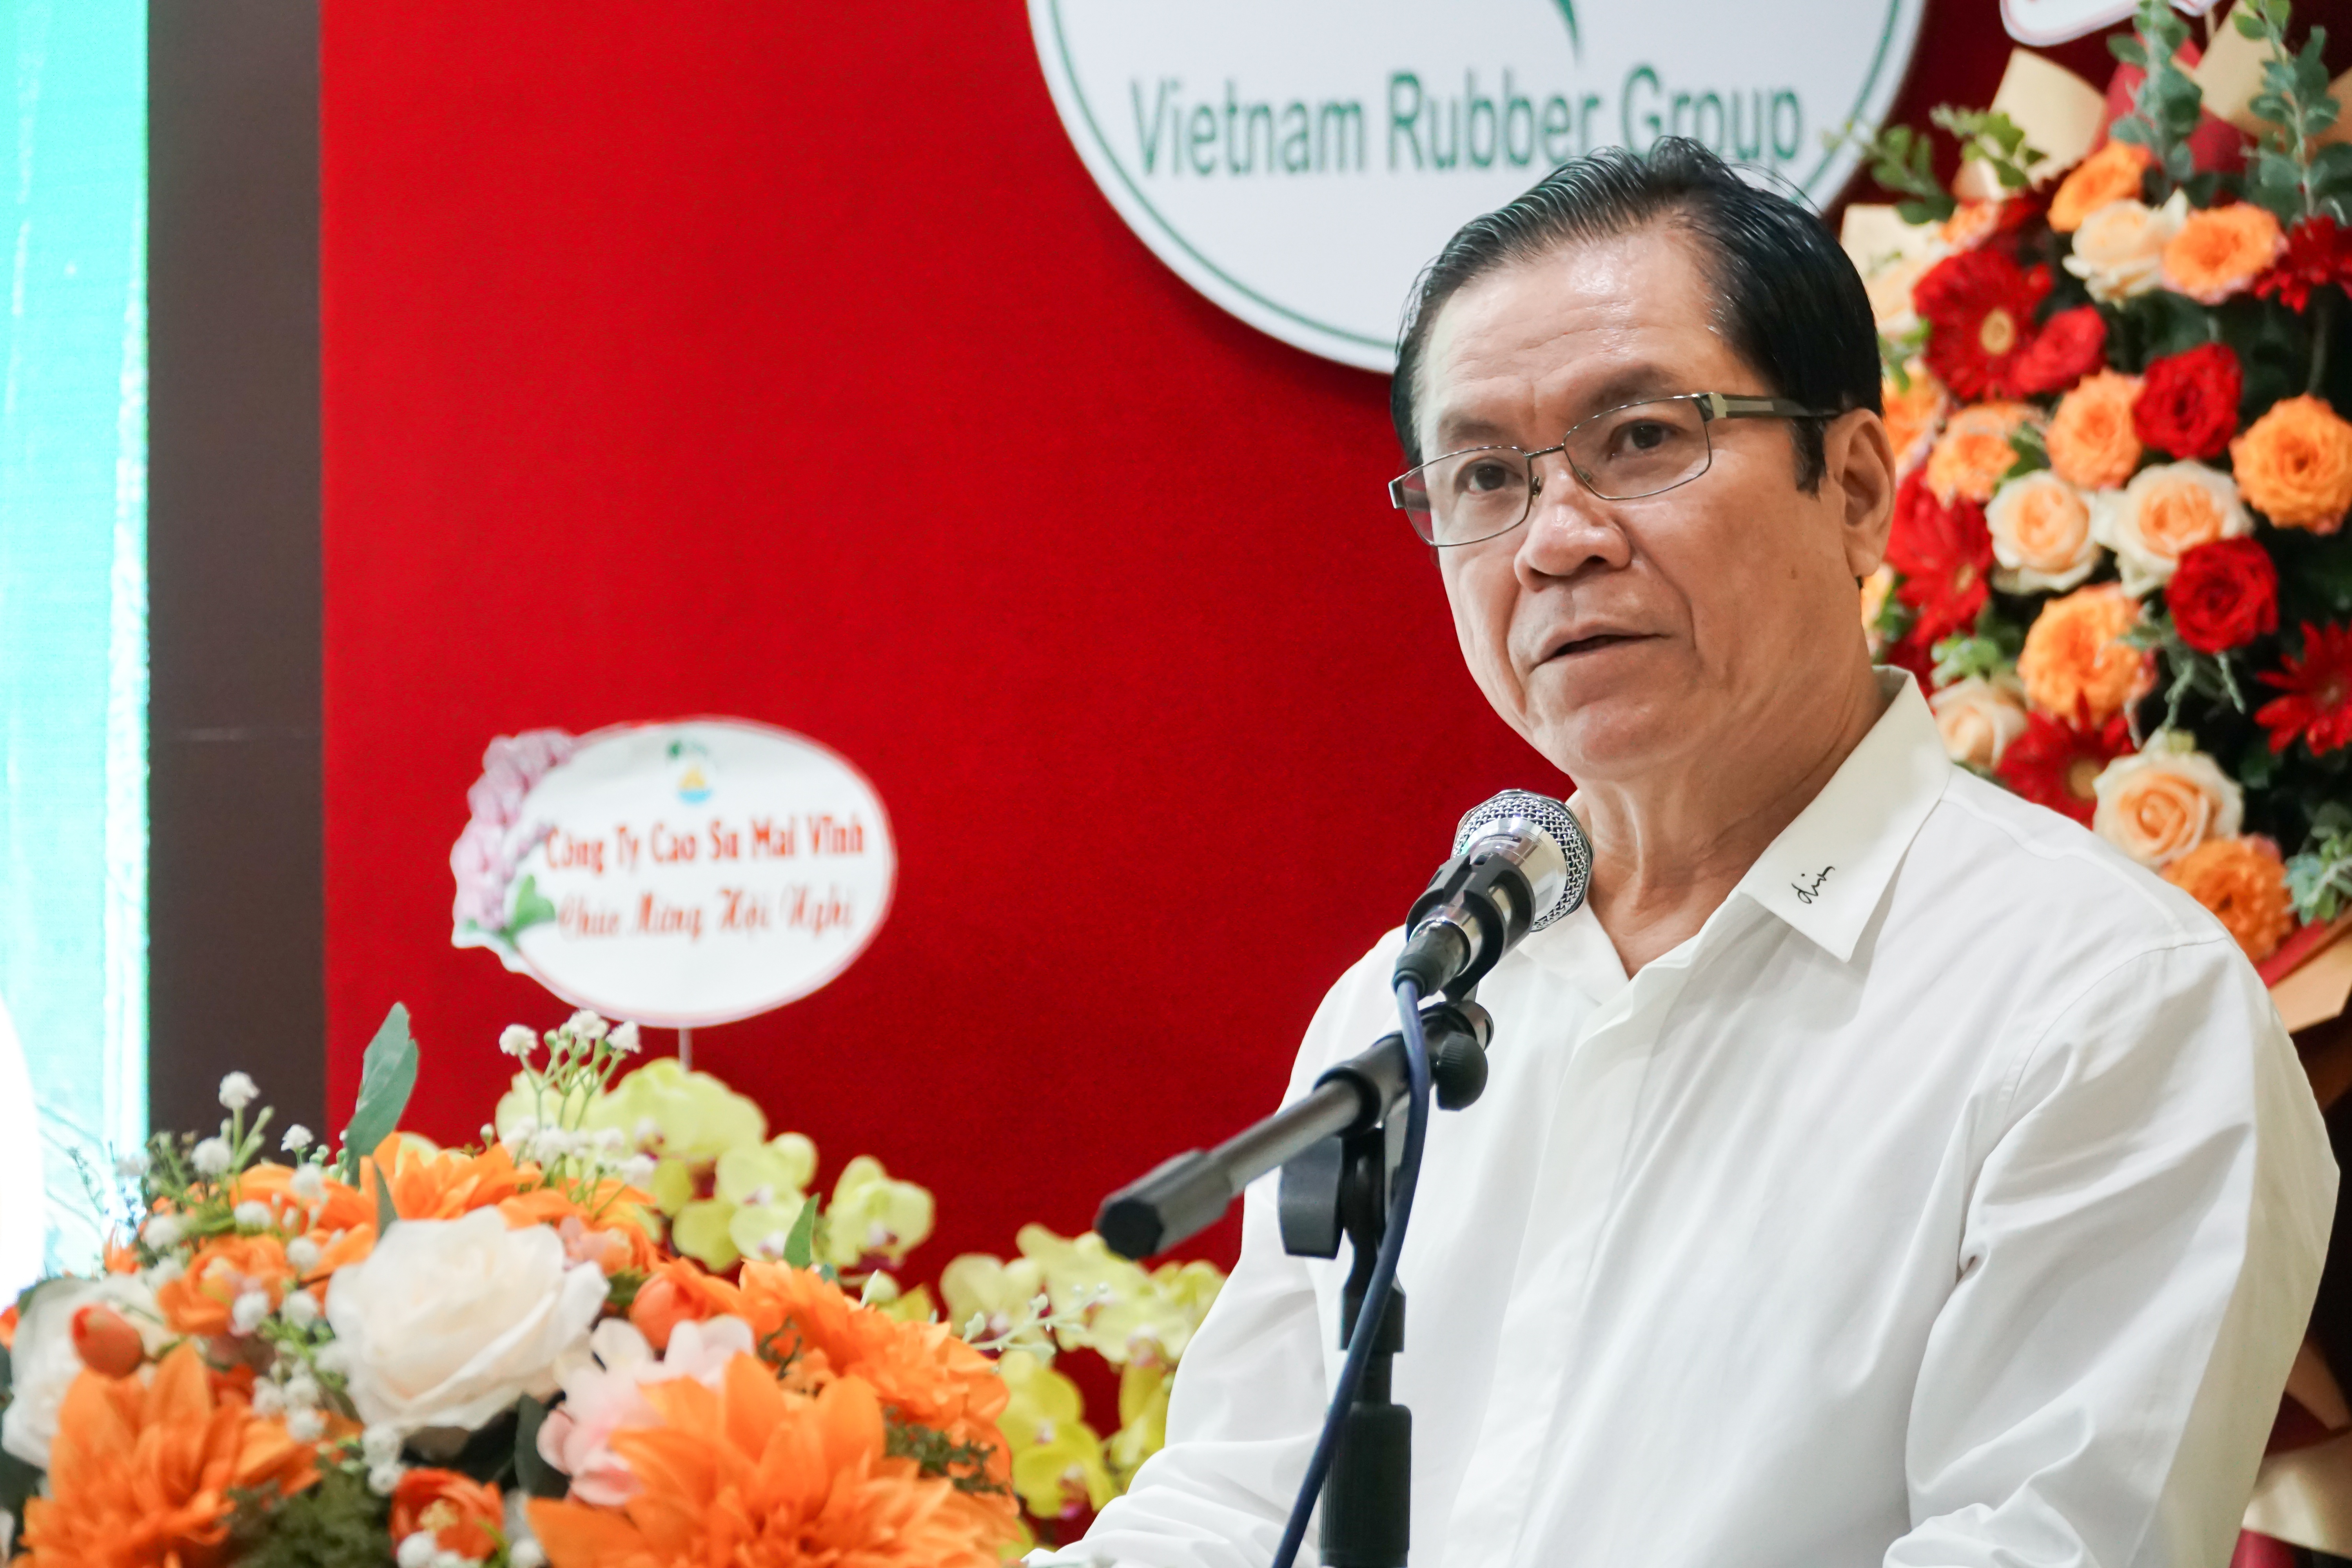 Ông Lê Thanh Hưng, Tổng giám đốc VRG phát biểu tại Hội nghị